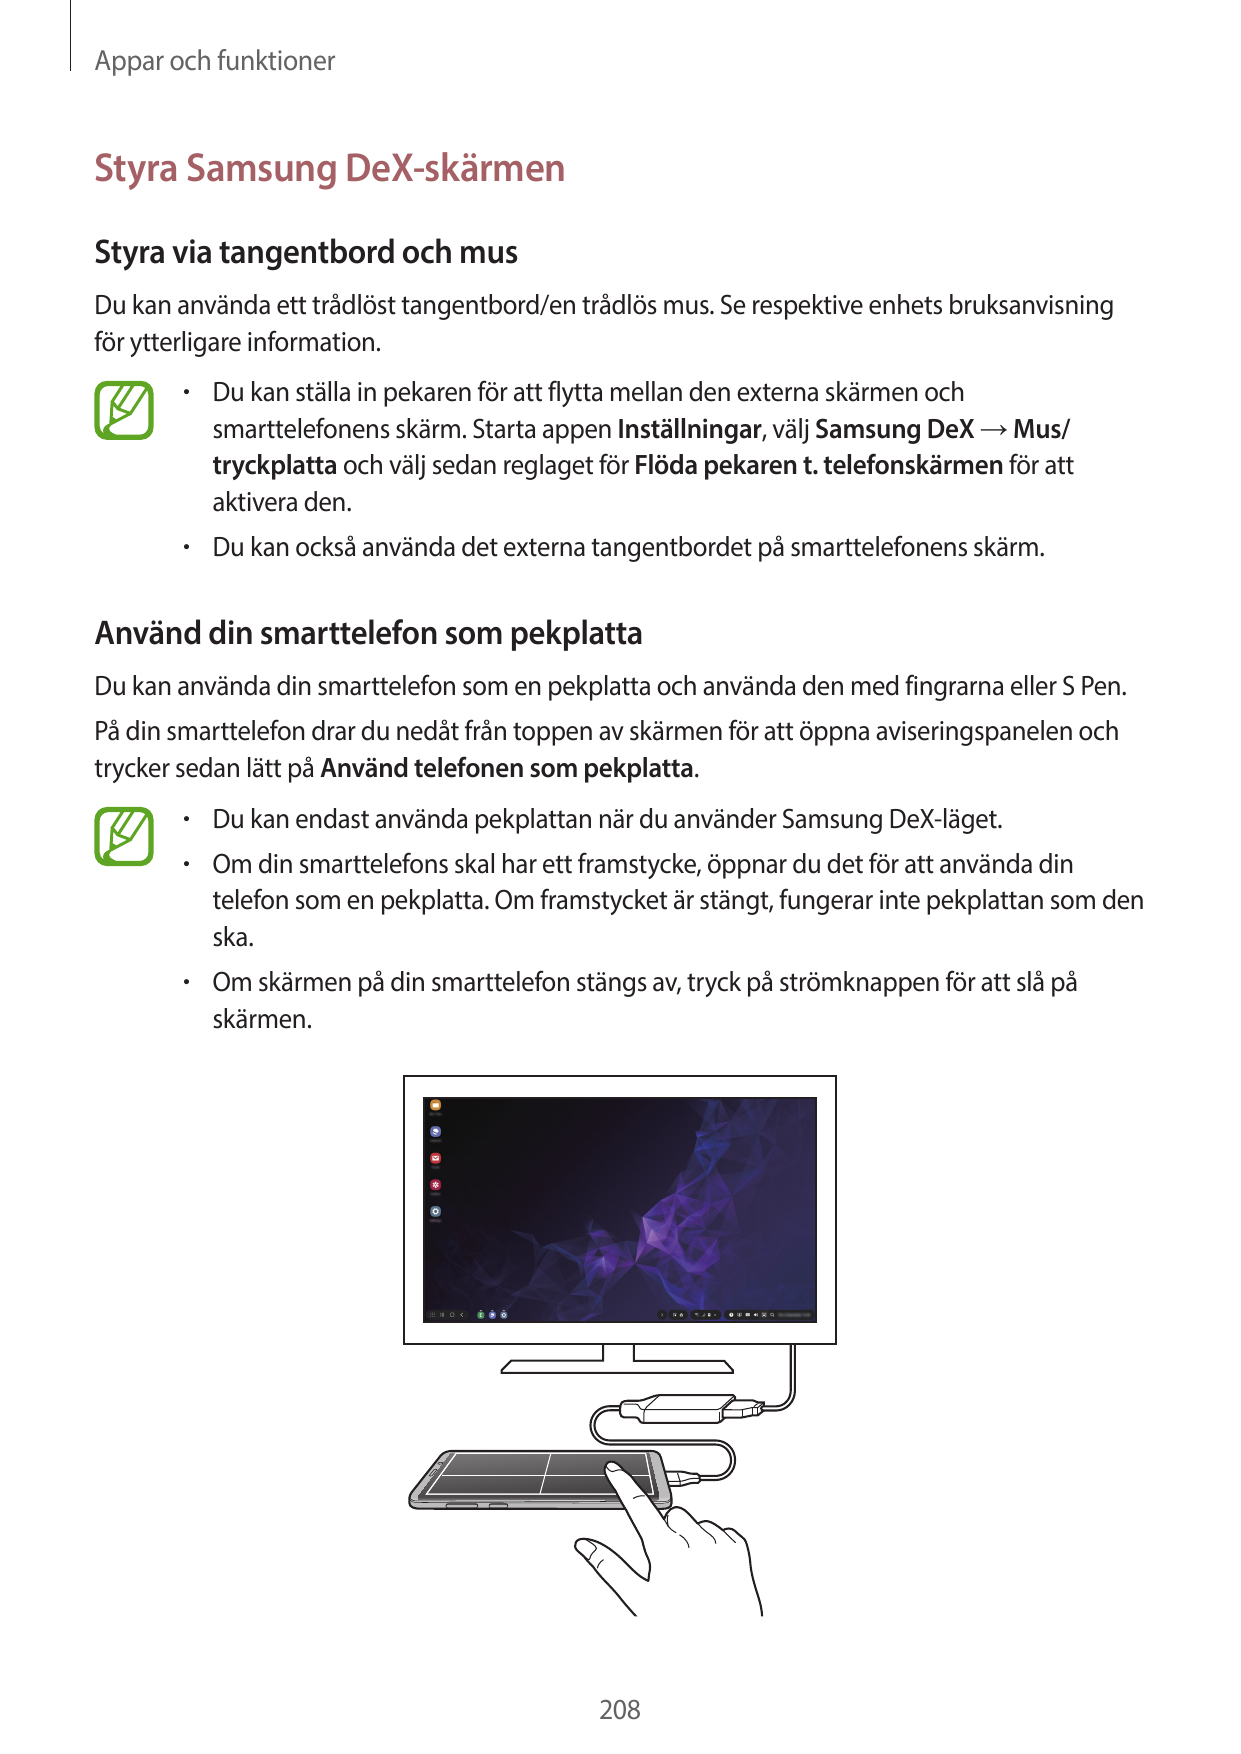 Appar och funktionerStyra Samsung DeX-skärmenStyra via tangentbord och musDu kan använda ett trådlöst tangentbord/en trådlös mus